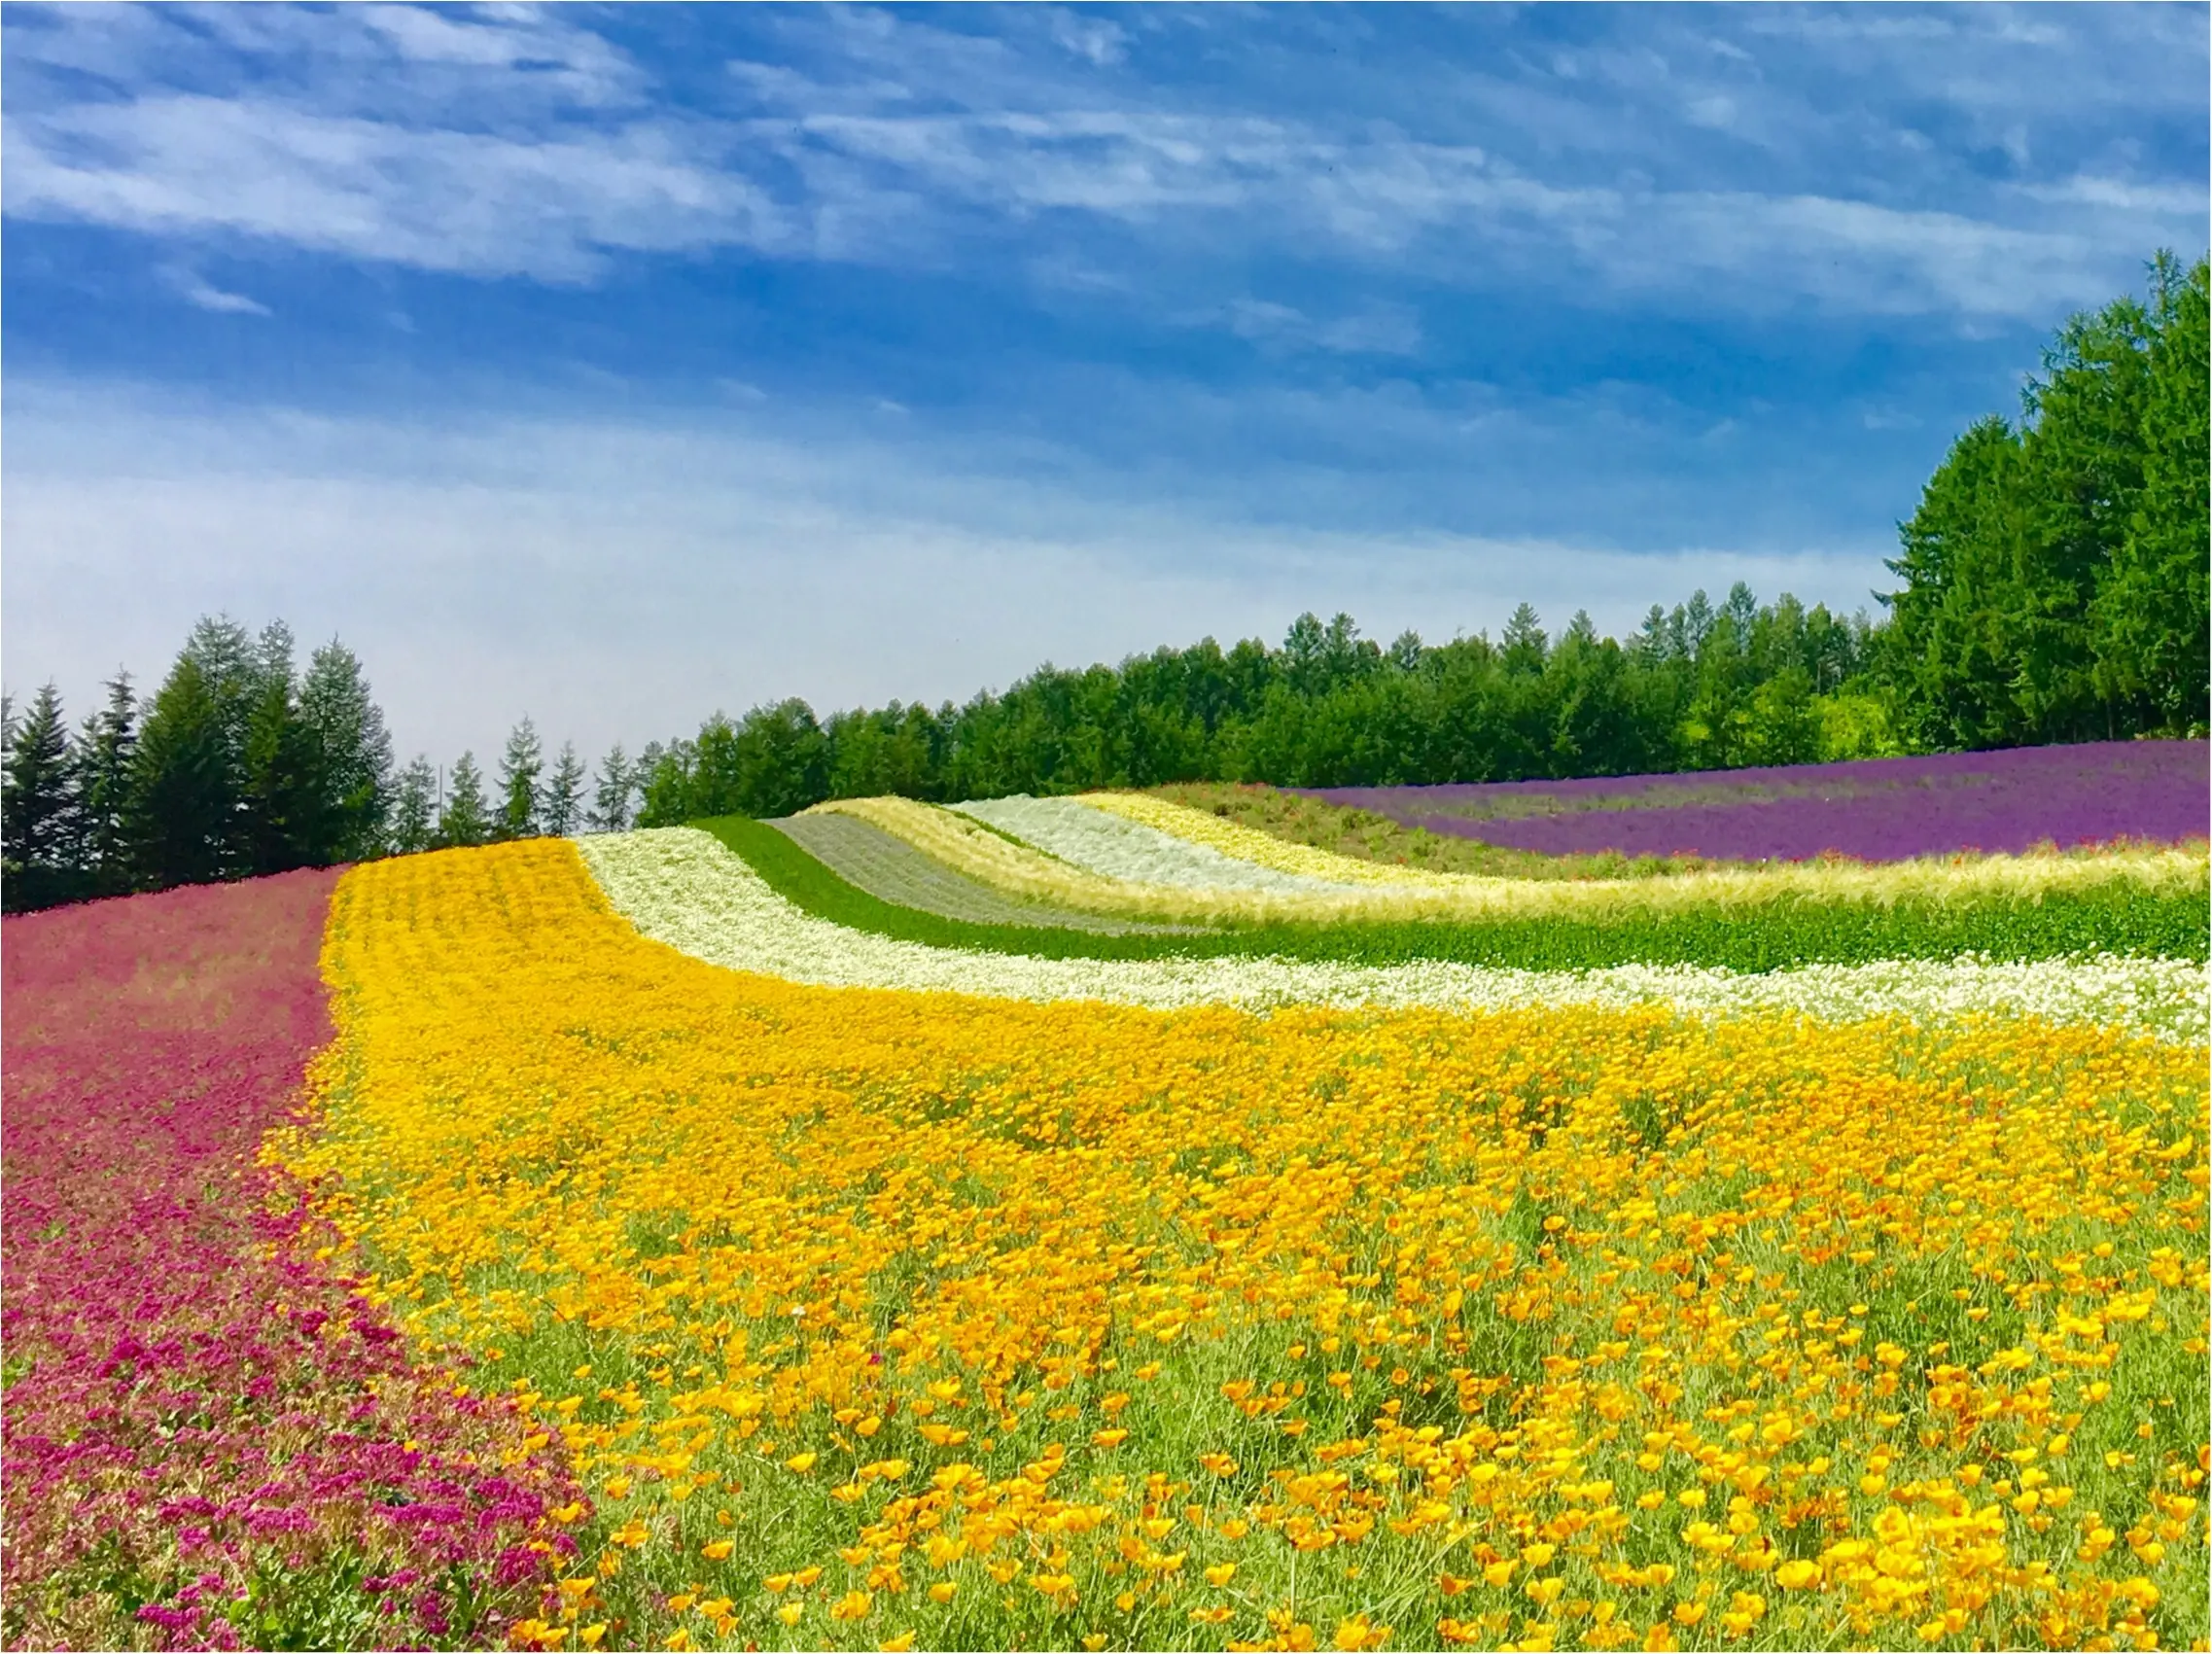 北海道 ラベンダー畑 で初夏を感じて 花のじゅうたん ファーム富田 Moreインフルエンサーズブログ Daily More